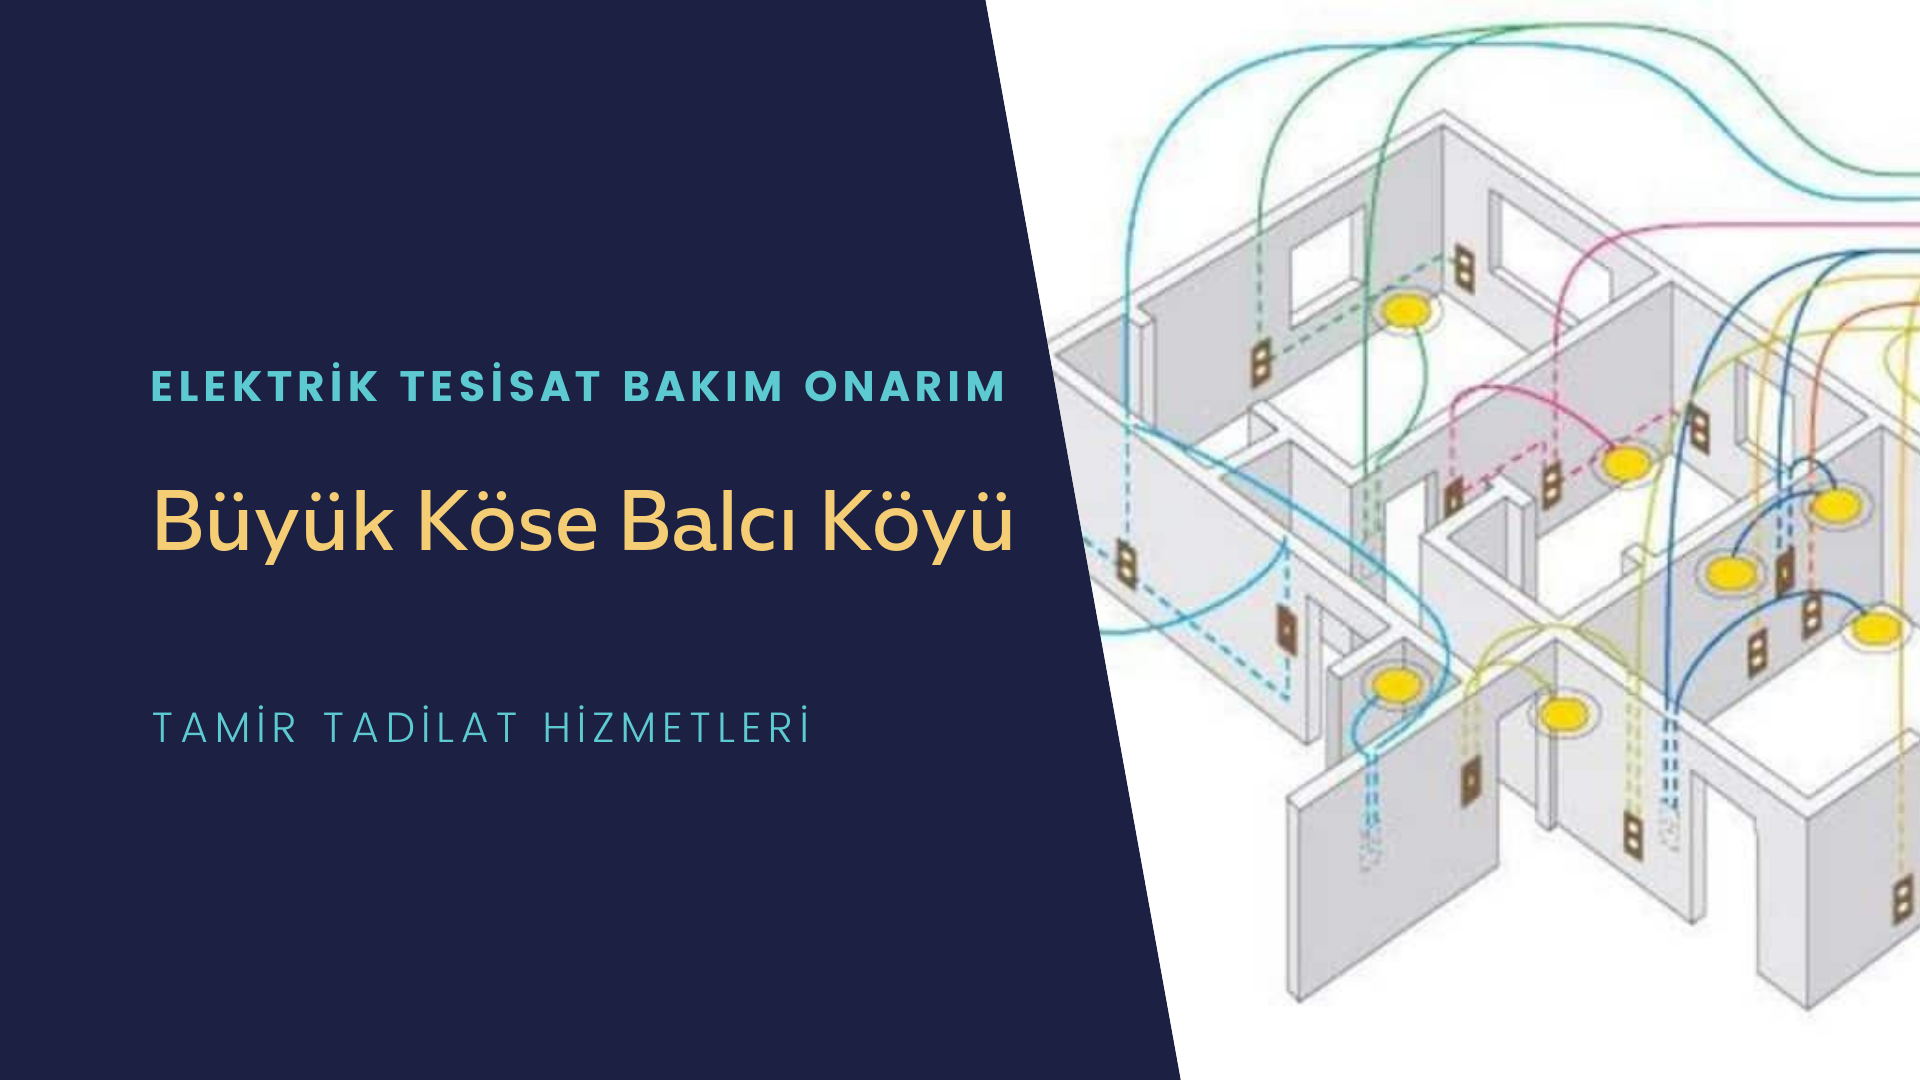 Büyük Köse Balcı Köyü  elektrik tesisatı ustalarımı arıyorsunuz doğru adrestenizi Büyük Köse Balcı Köyü elektrik tesisatı ustalarımız 7/24 sizlere hizmet vermekten mutluluk duyar.